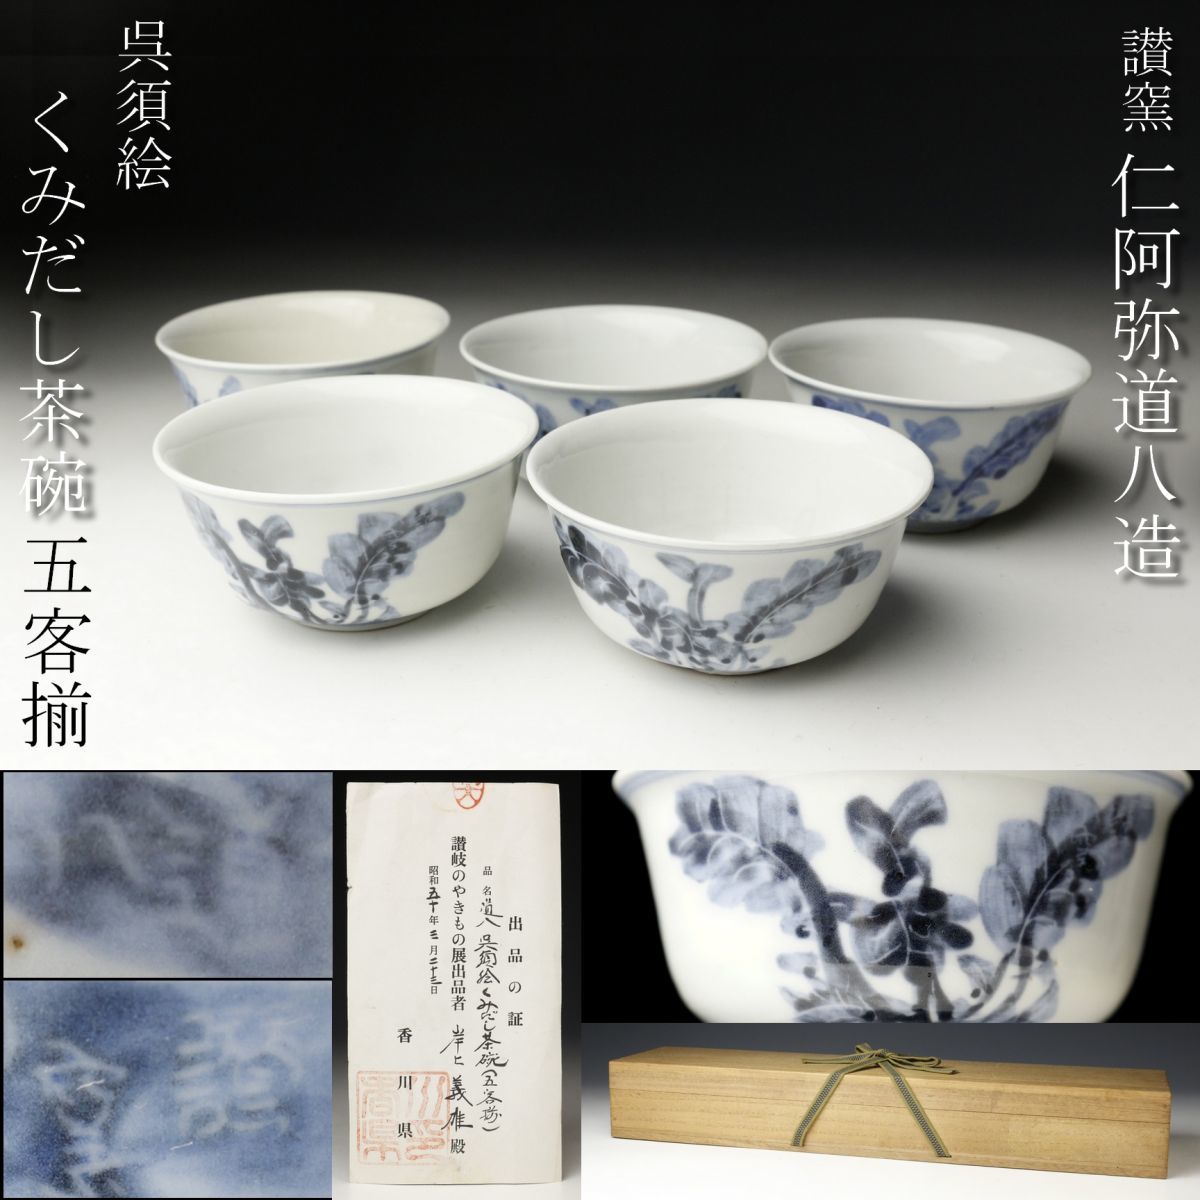 36000円売店 一 番 安い 清風与平 加納銕哉 巾筒 煎茶道具 茶道具 美術 